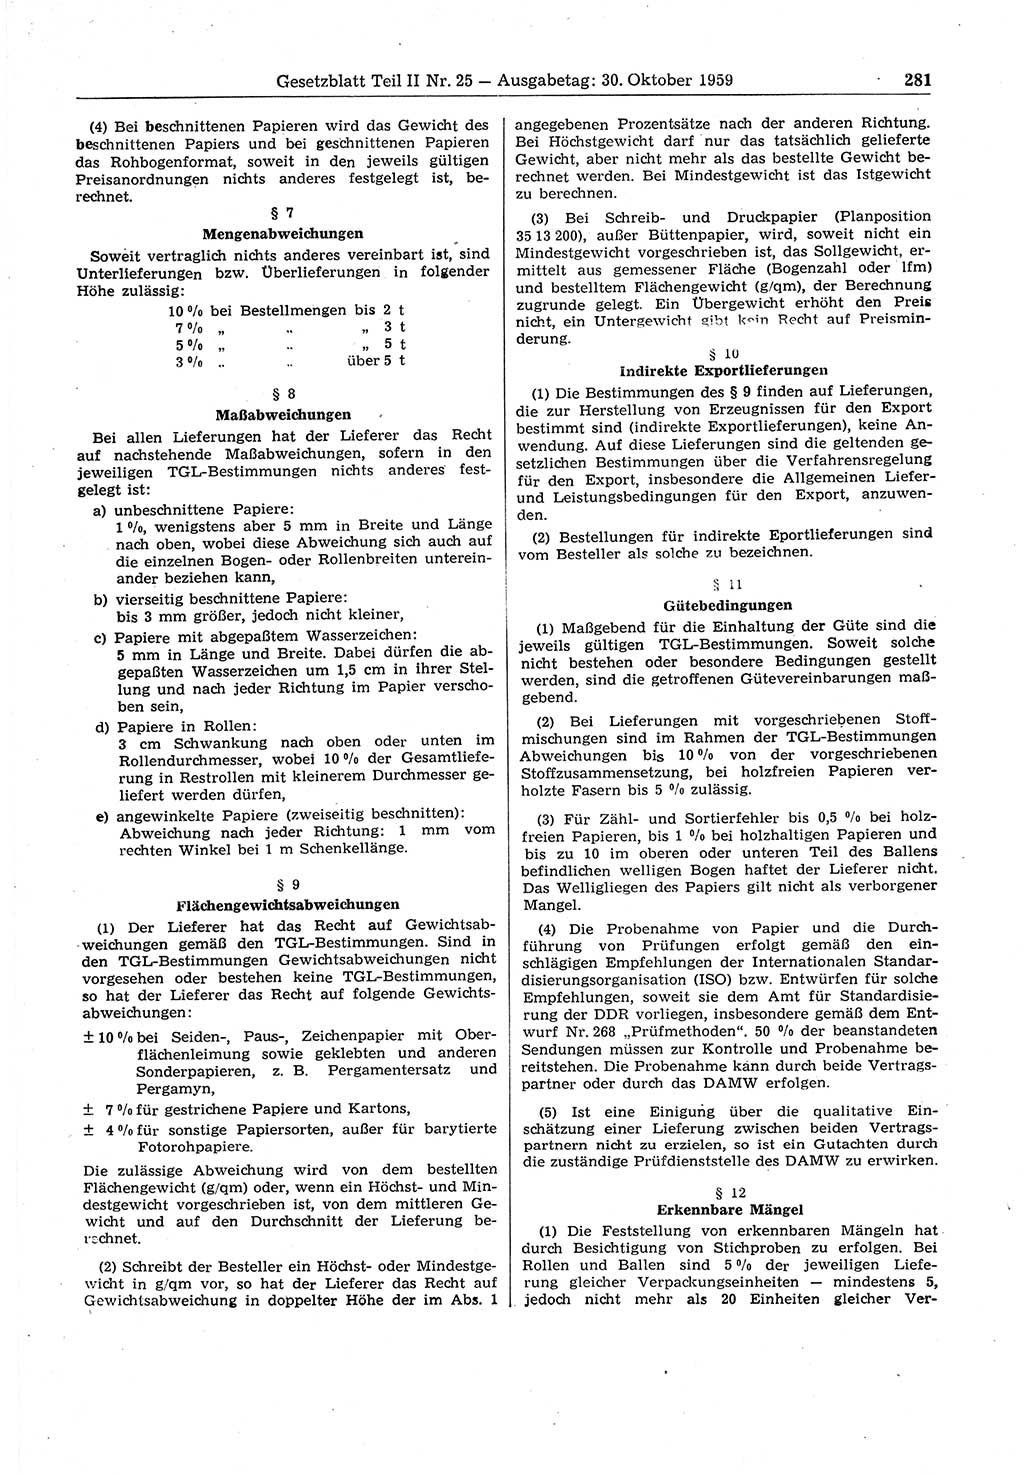 Gesetzblatt (GBl.) der Deutschen Demokratischen Republik (DDR) Teil â… â… 1959, Seite 281 (GBl. DDR â… â… 1959, S. 281)